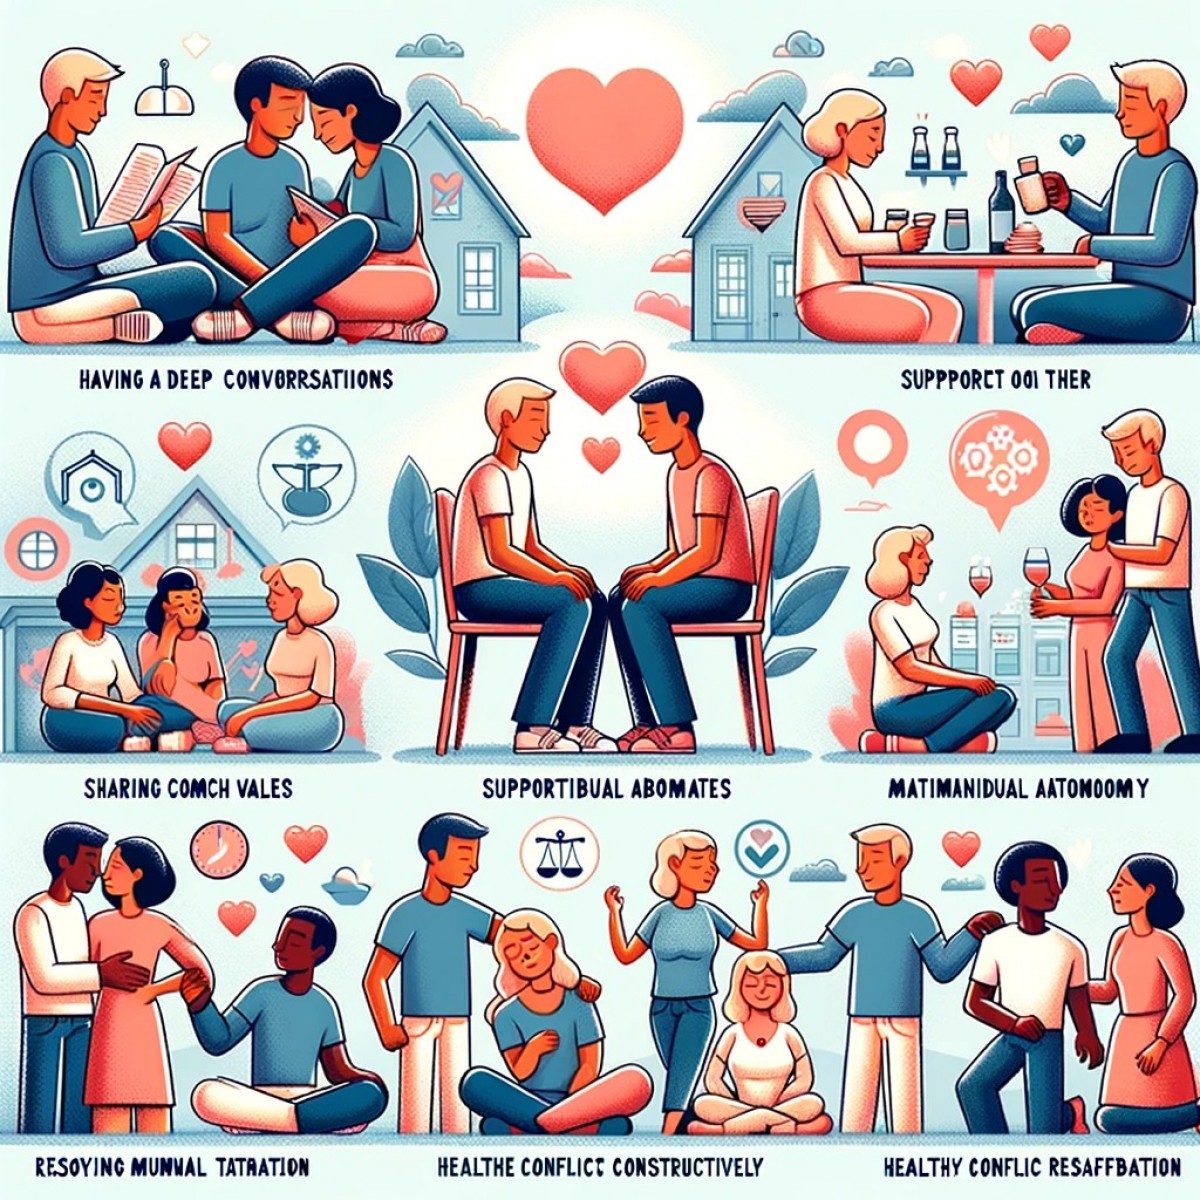 8 signes d'une relation amoureuse compatible